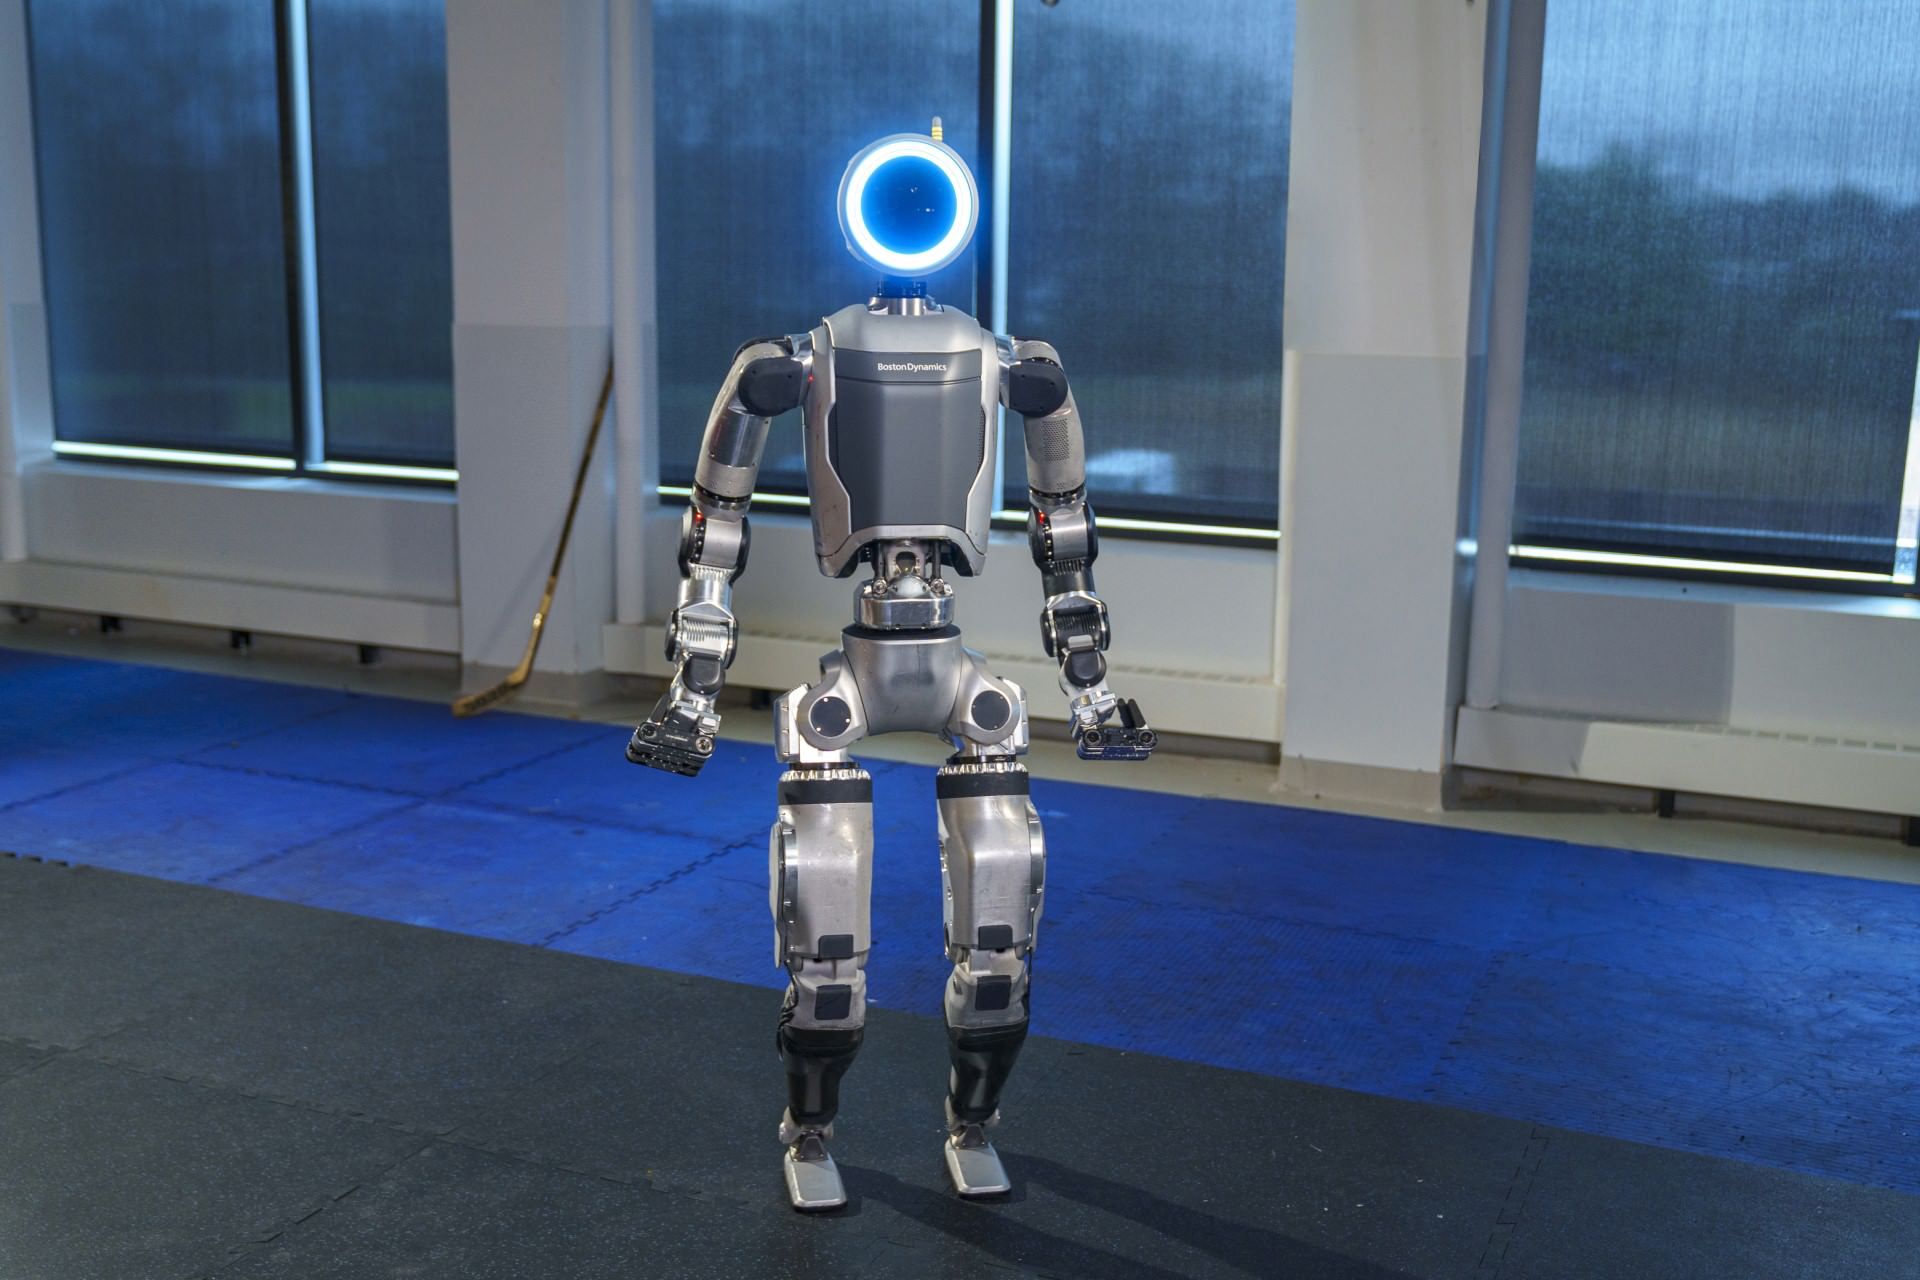 ربات اطلس بوستون داینامیکس